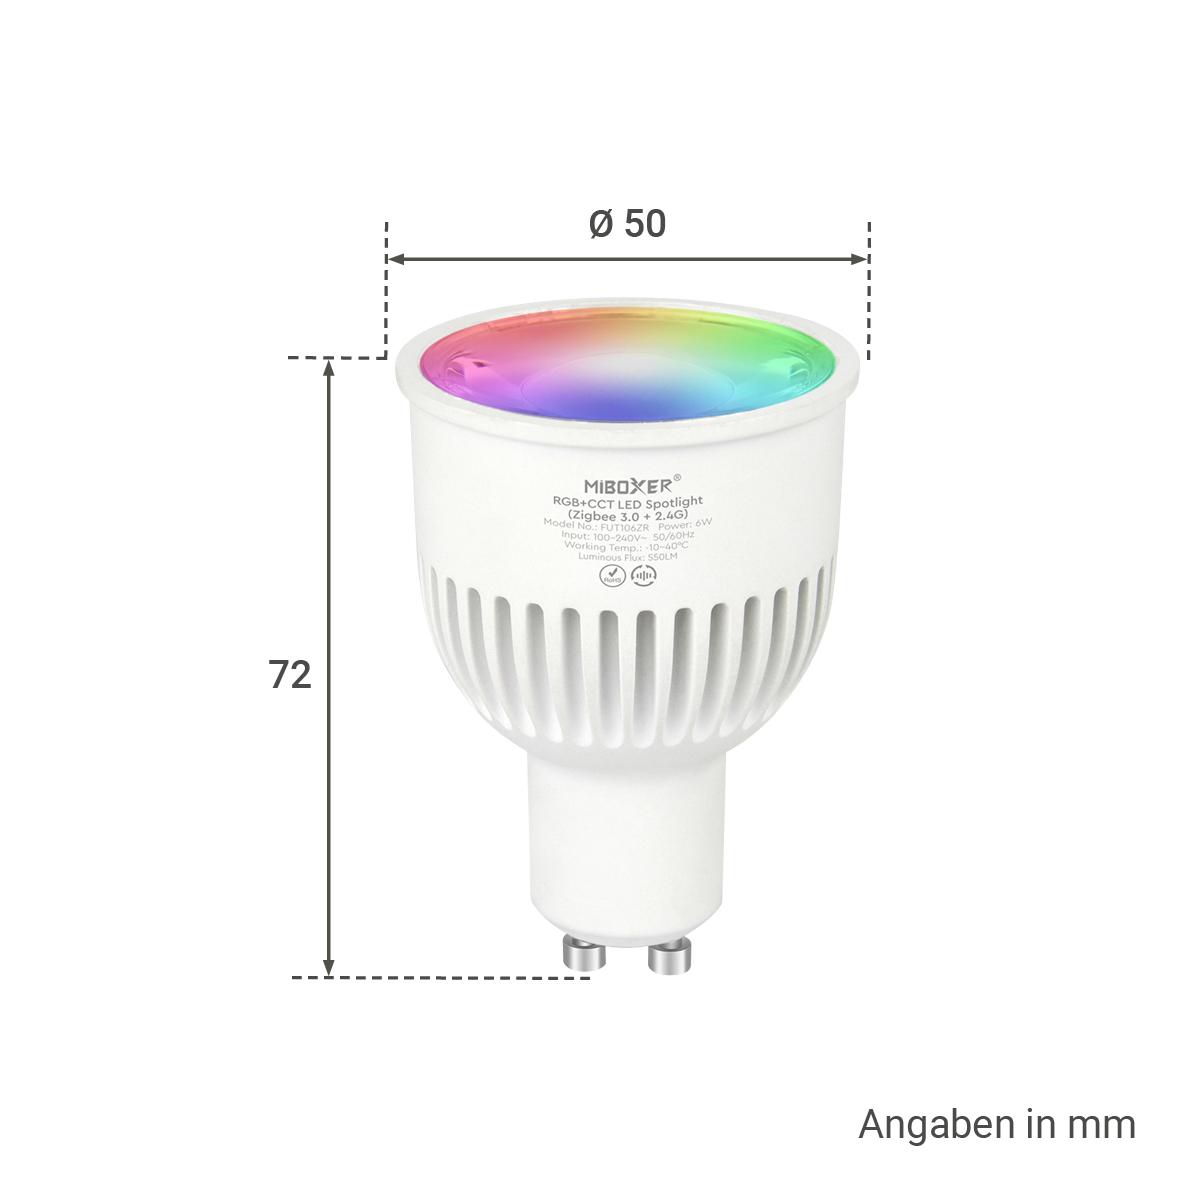 MiBoxer Zigbee 3.0 + 2.4G RGB+CCT LED Spot 6W GU10 FUT106ZR